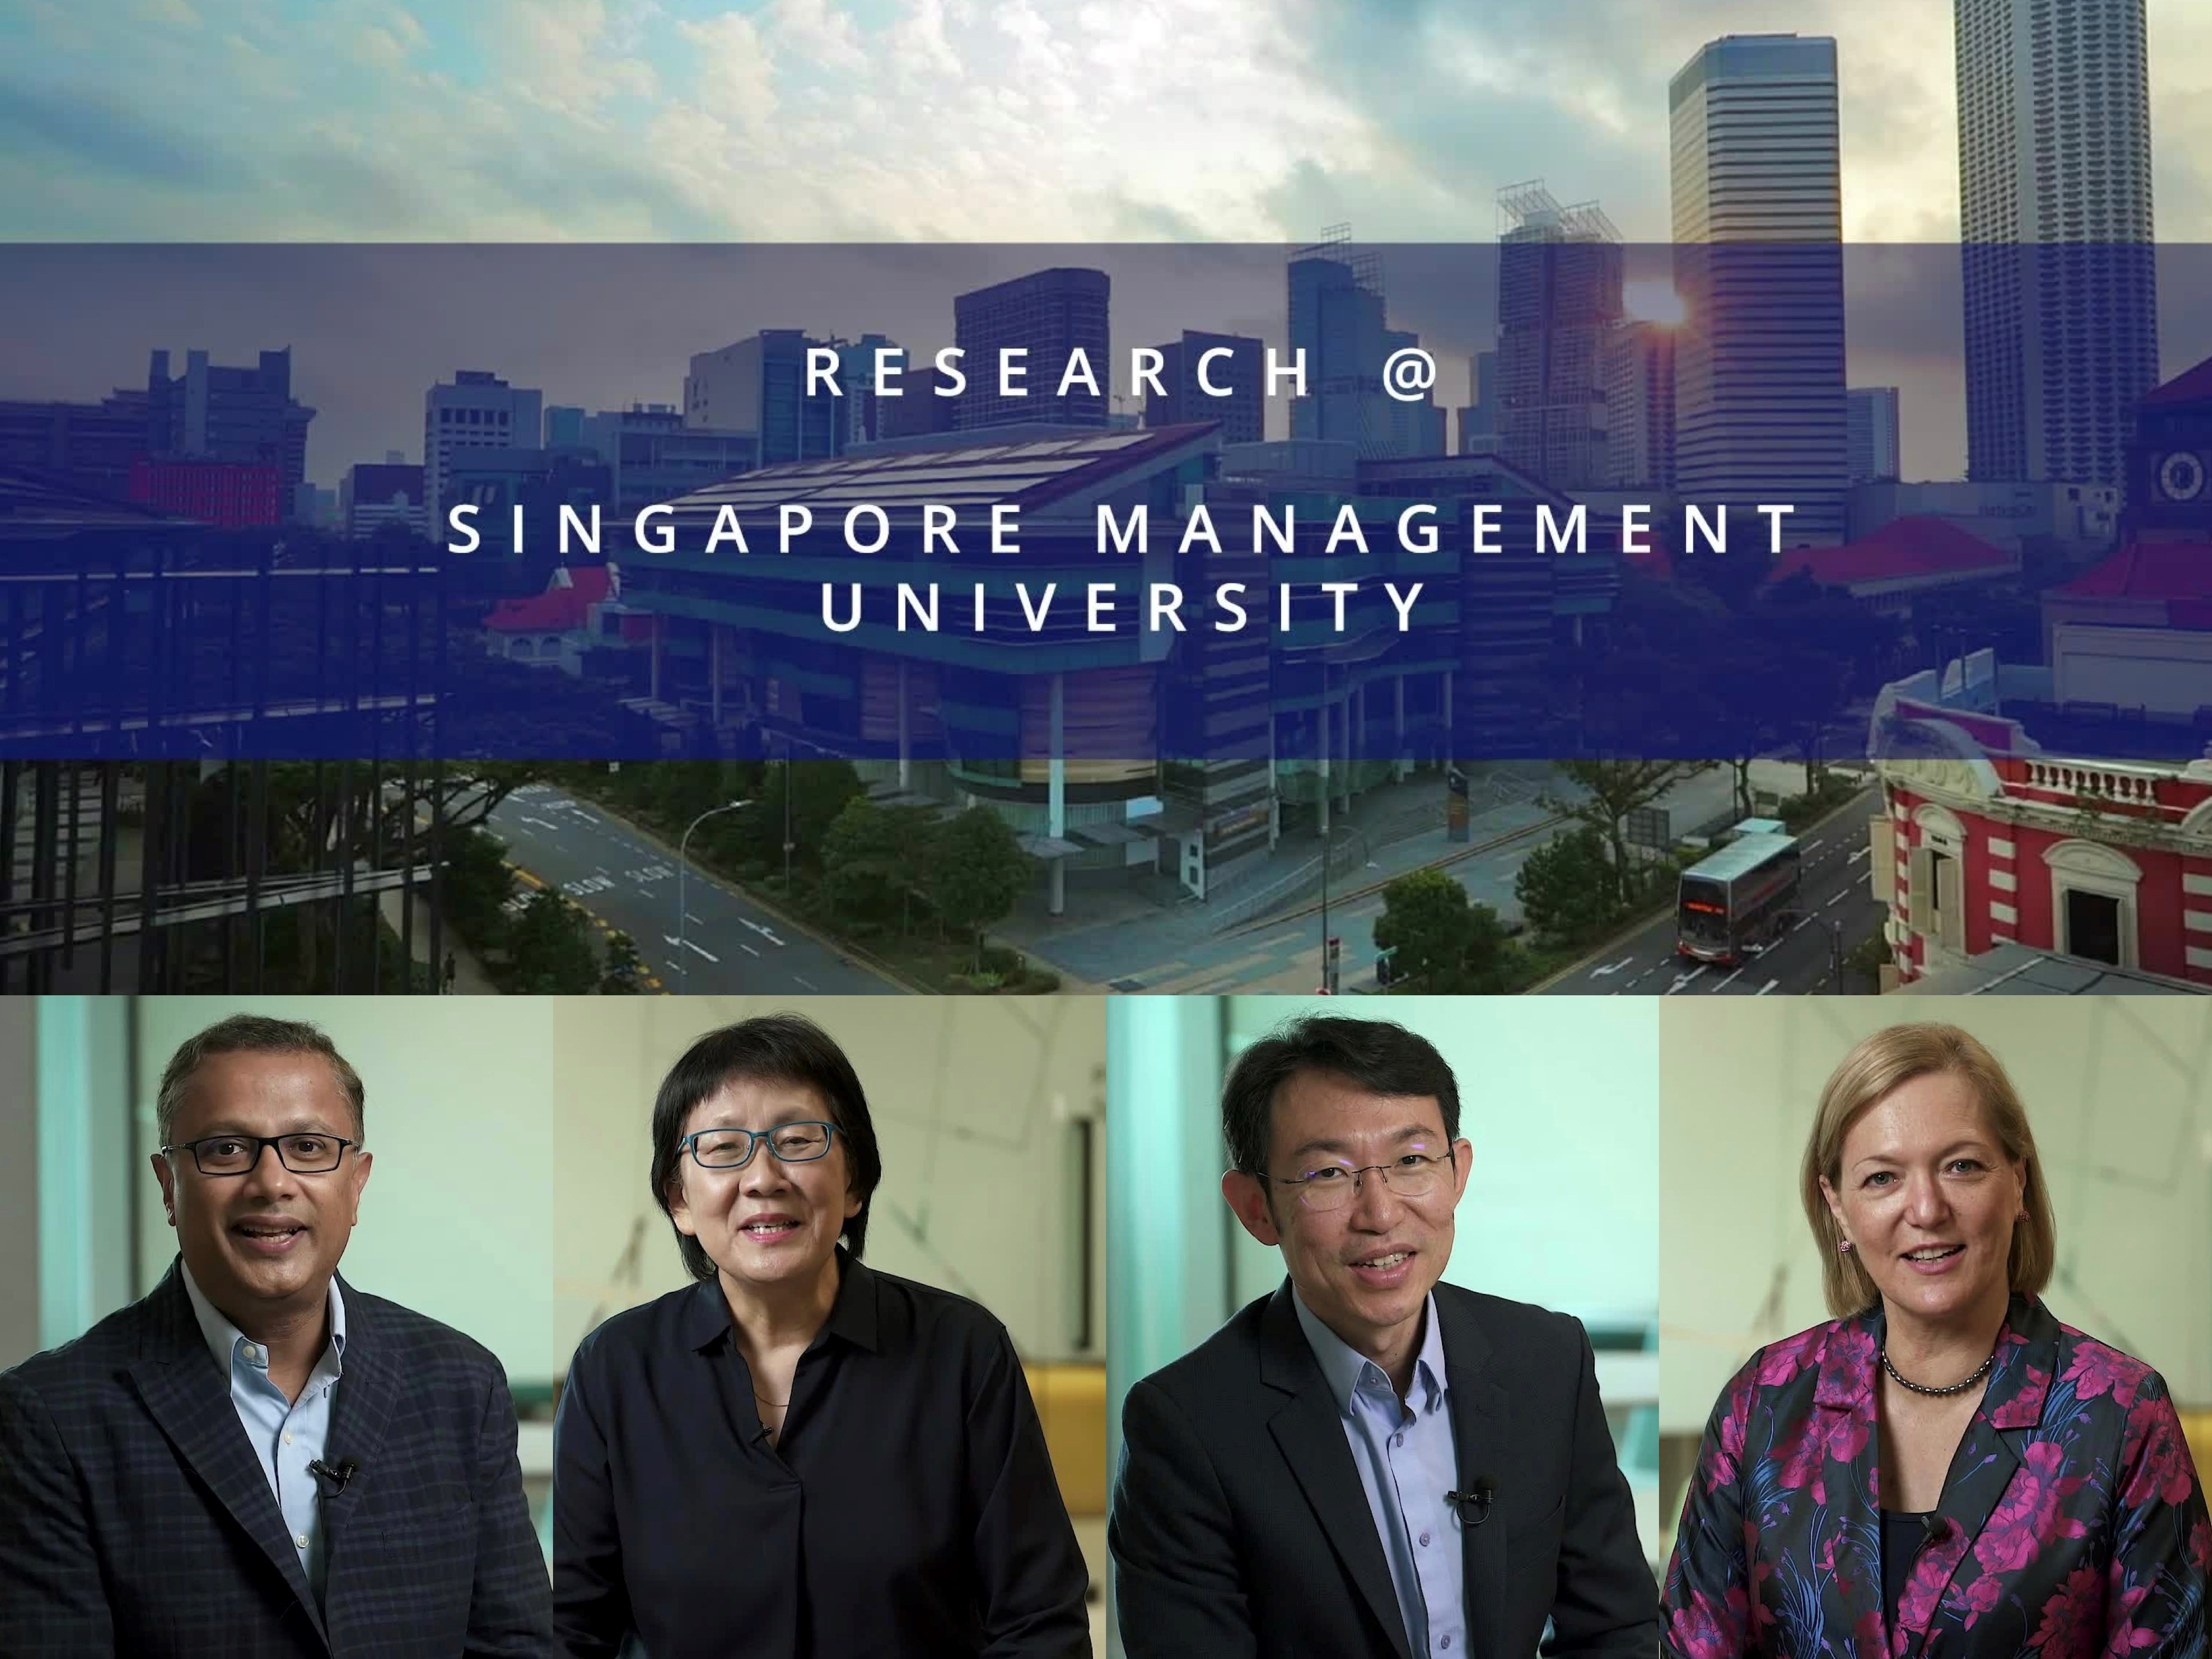 Research@SMU: Corporate Video